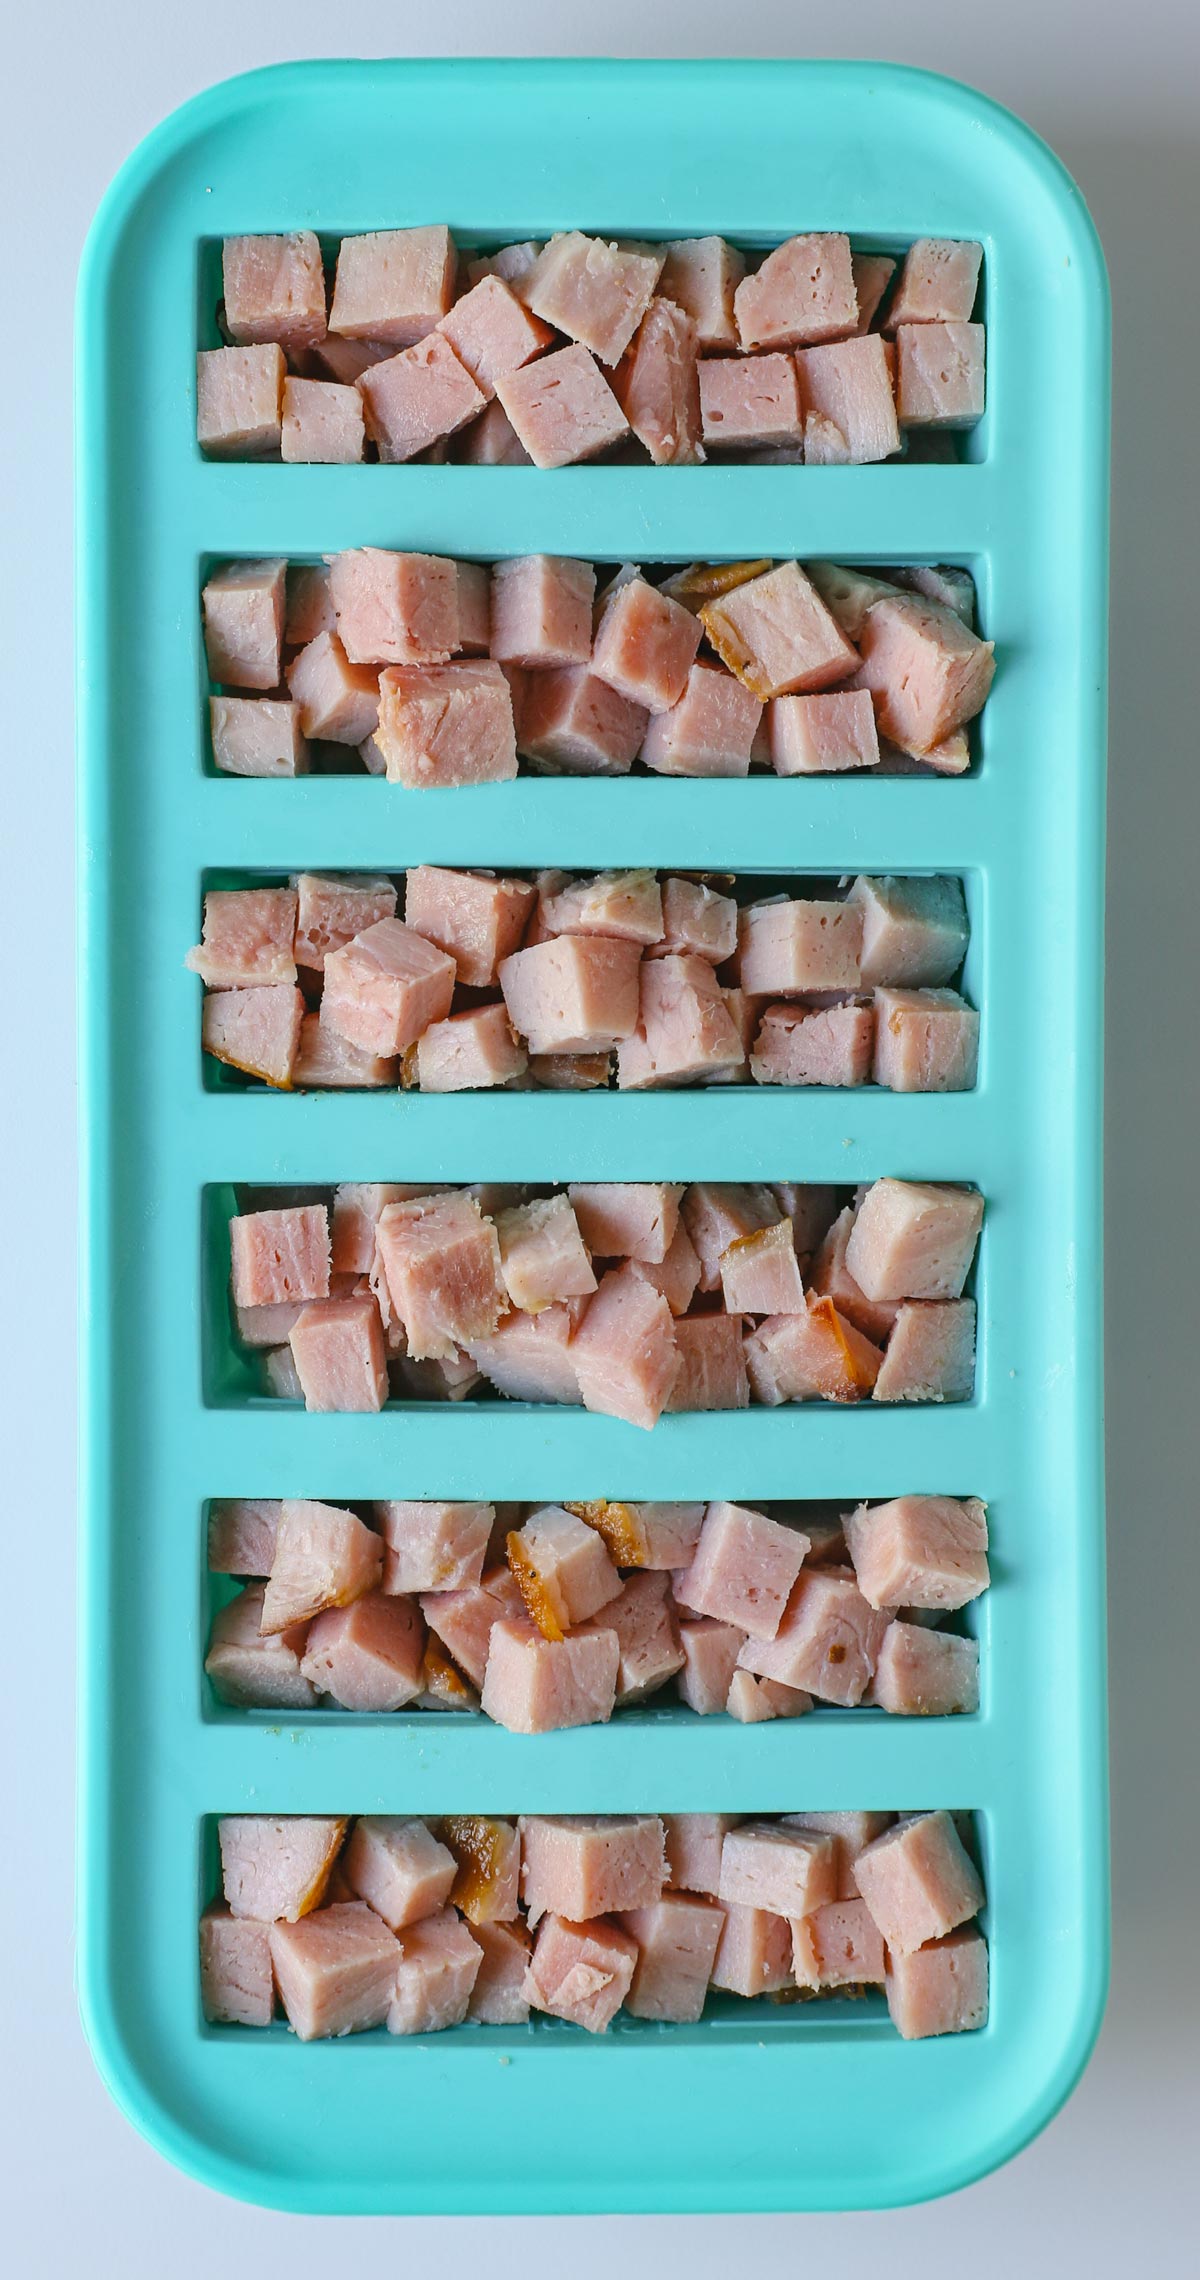 cubed ham in a souper cube.